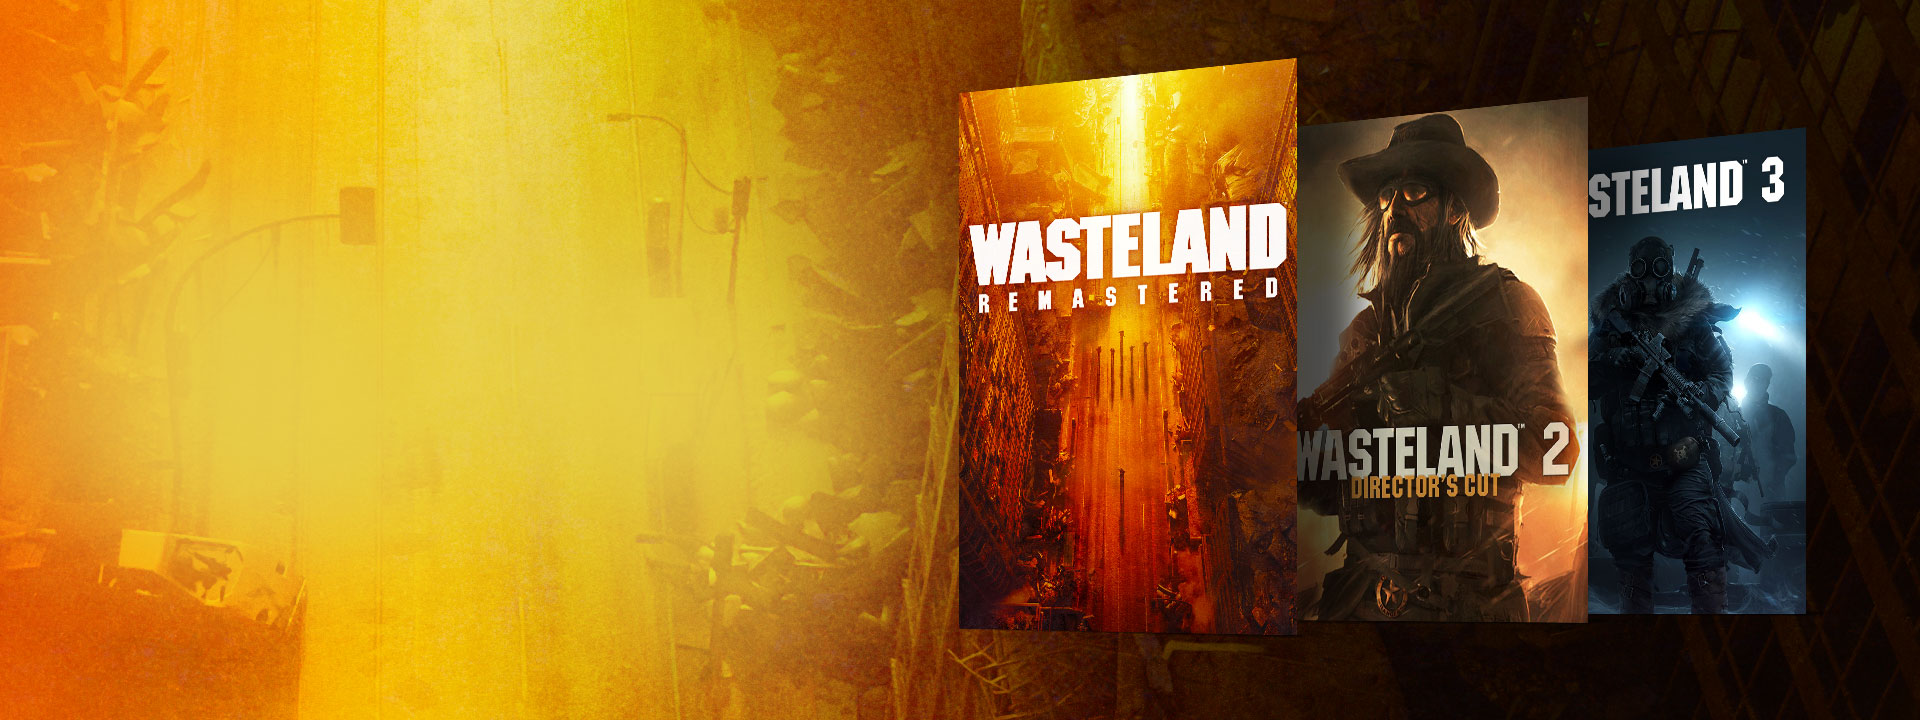 Obrázky balenia hry Wasteland Remastered, Wasteland 2 Cut's Director a Wasteland 3. Pozadie opustenej ulice so žltými a oranžovými odtieňmi